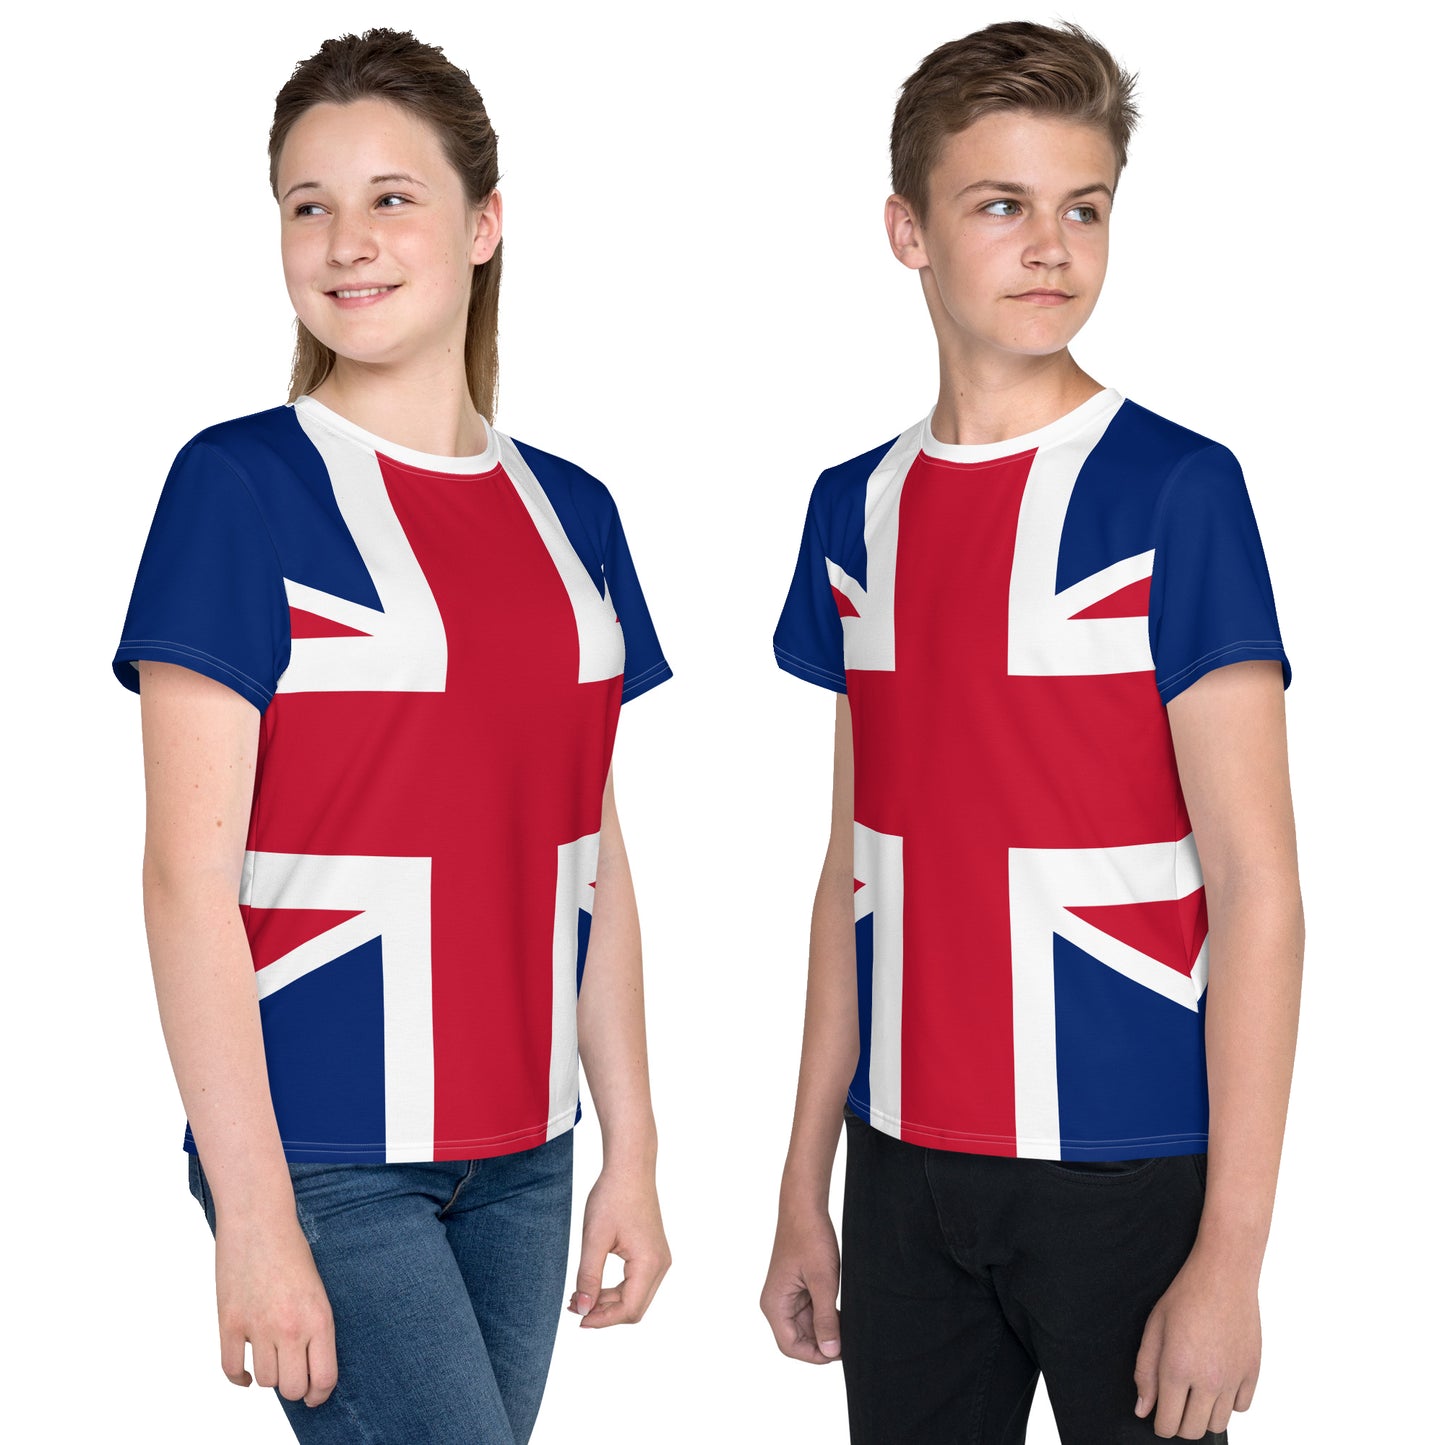 Youth Sizes Shirt Union Jack